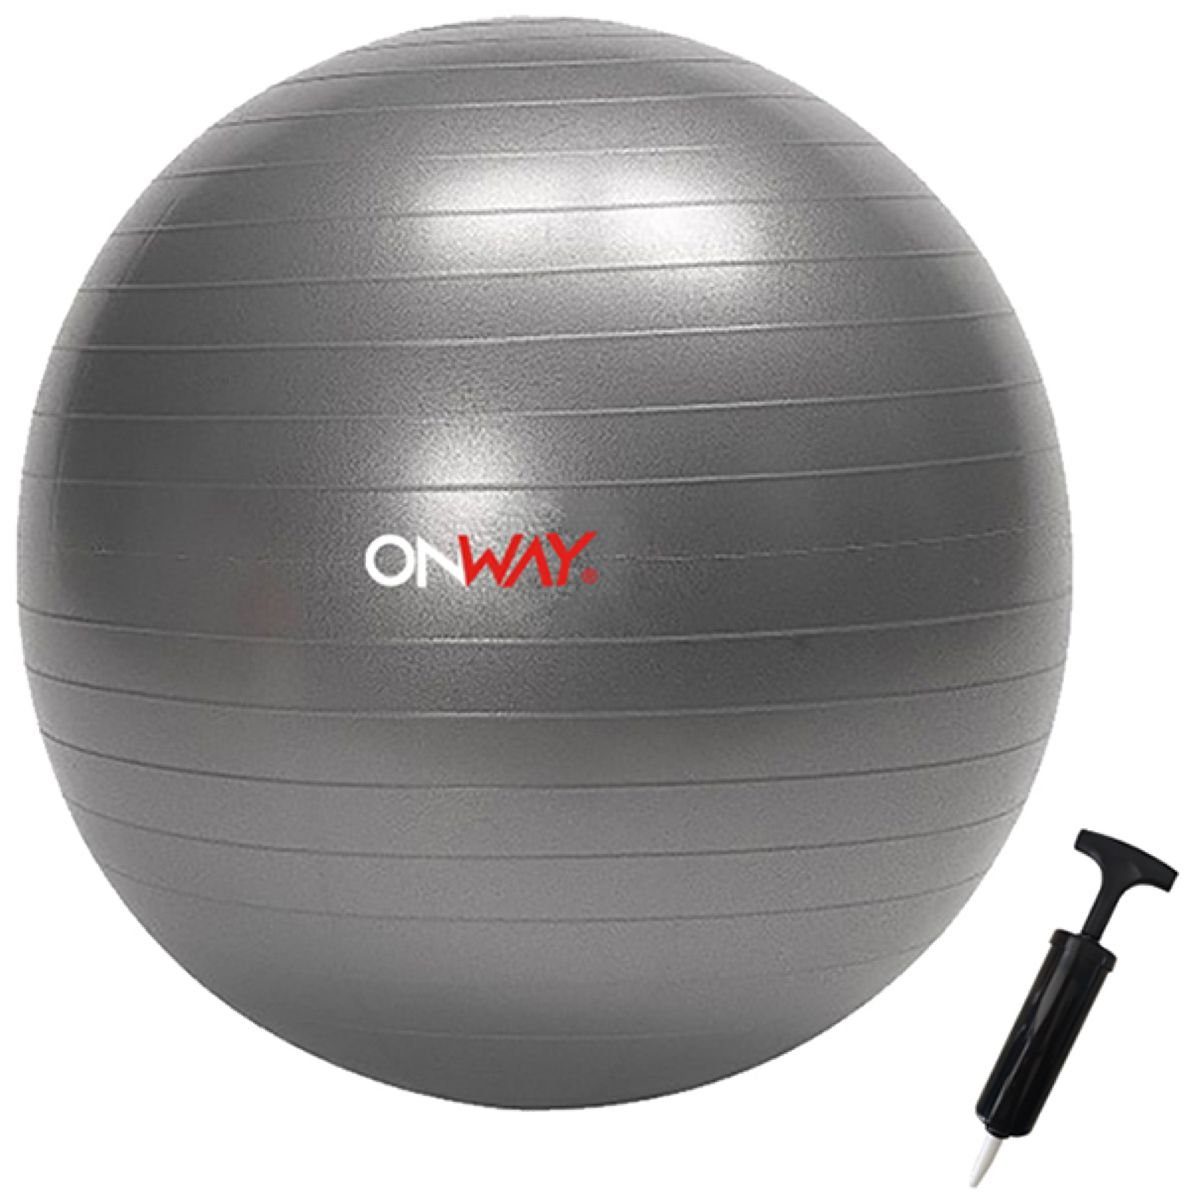 OnWay Gymnastikball OnWay Gymnastikball mit Pumpe Fitnessball 55cm oder 65 cm grau zur Auswahl, Durchmesser 55 oder 65cm zur Auswahl